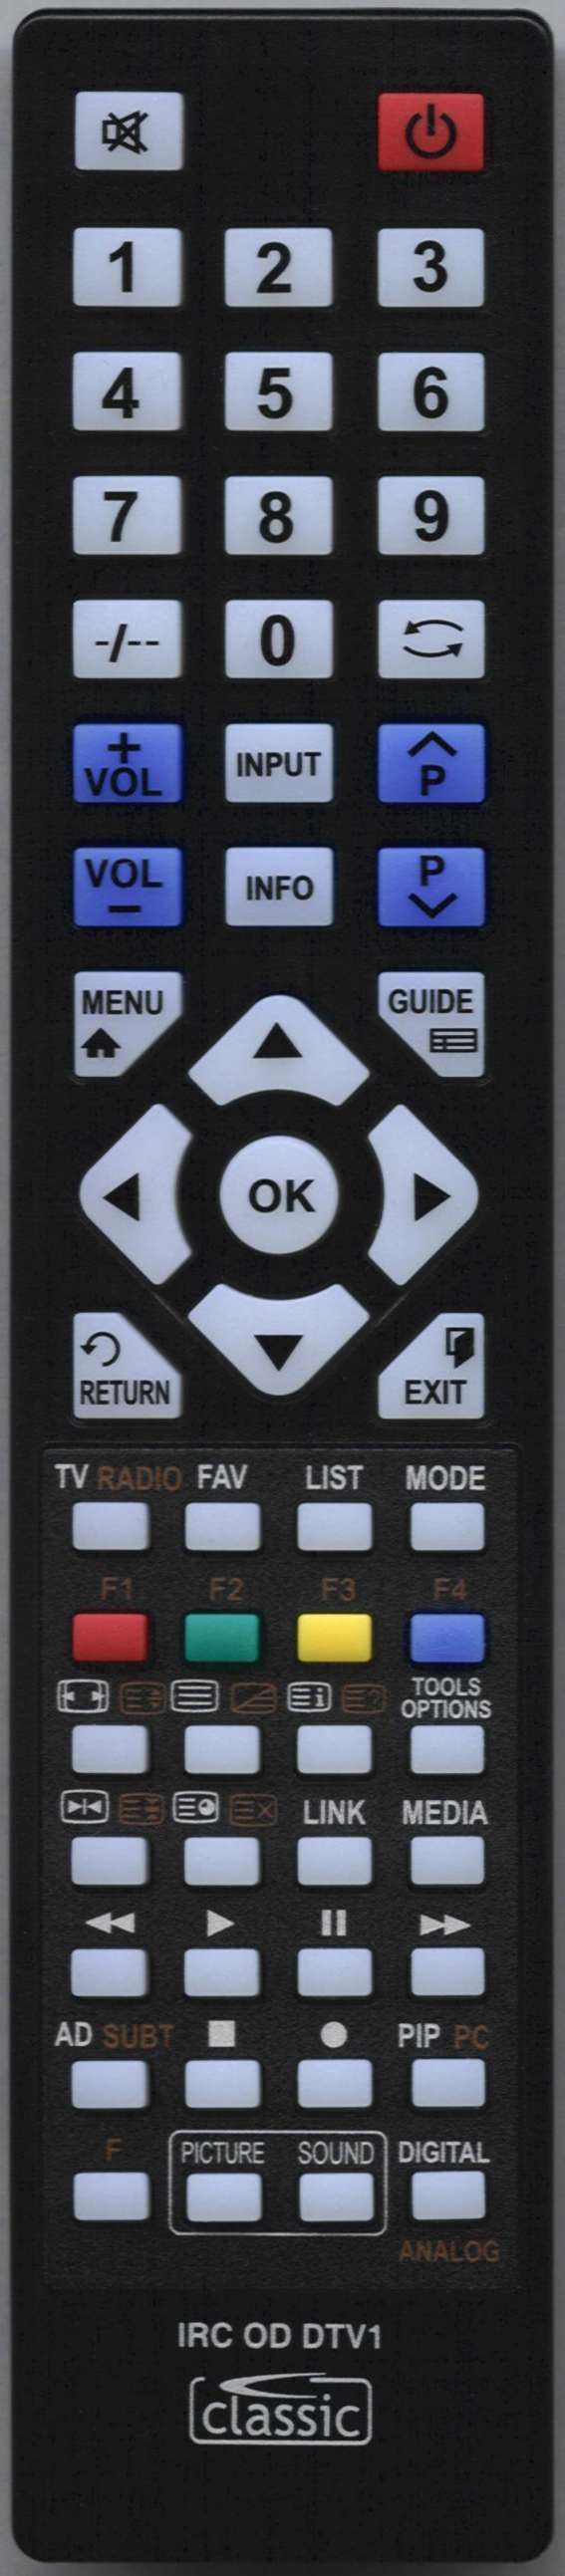 Daewoo 48B6259B0101 Remote Control